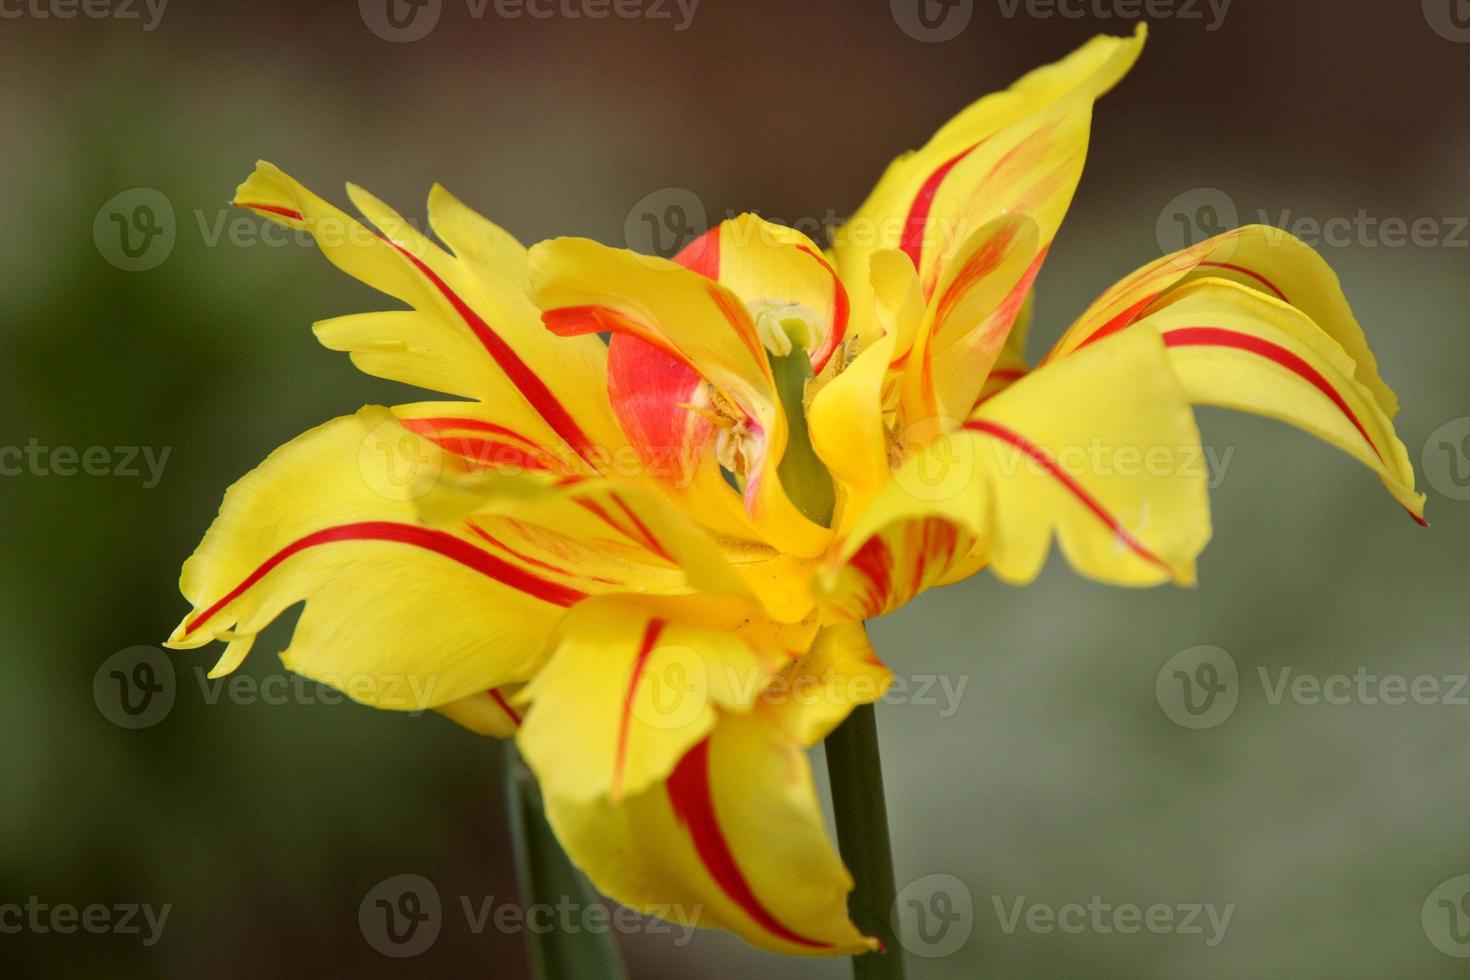 giallo con fiore a strisce rosse in primavera foto